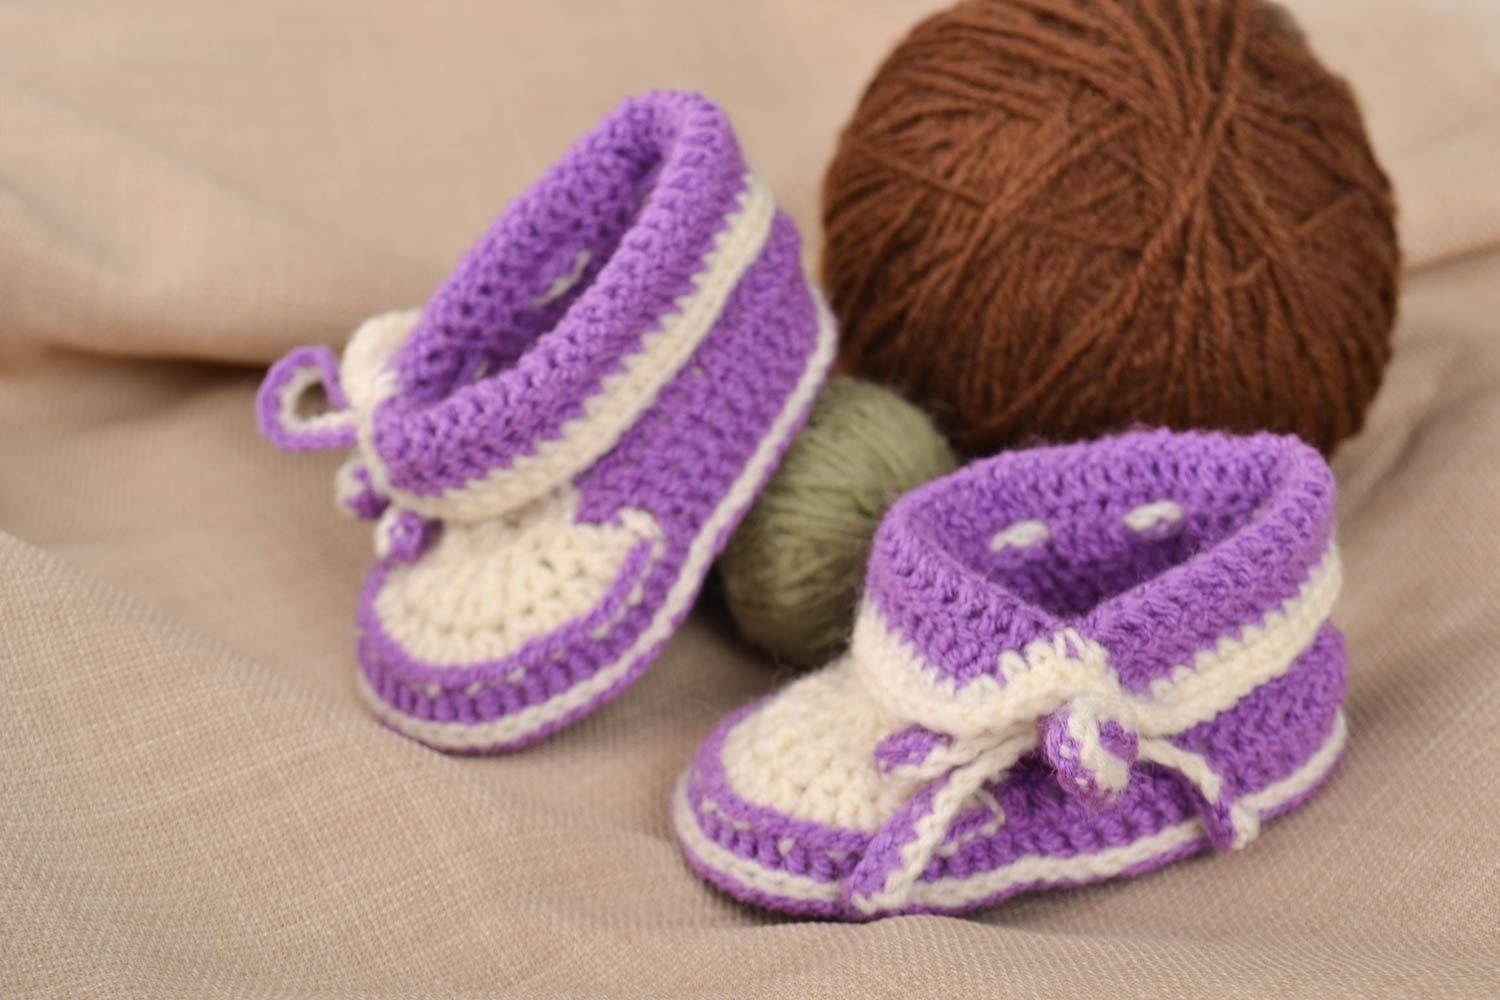 Chaussons bébé fait main en mi-laine au crochet blanc-mauve Chaussures bébé photo 1